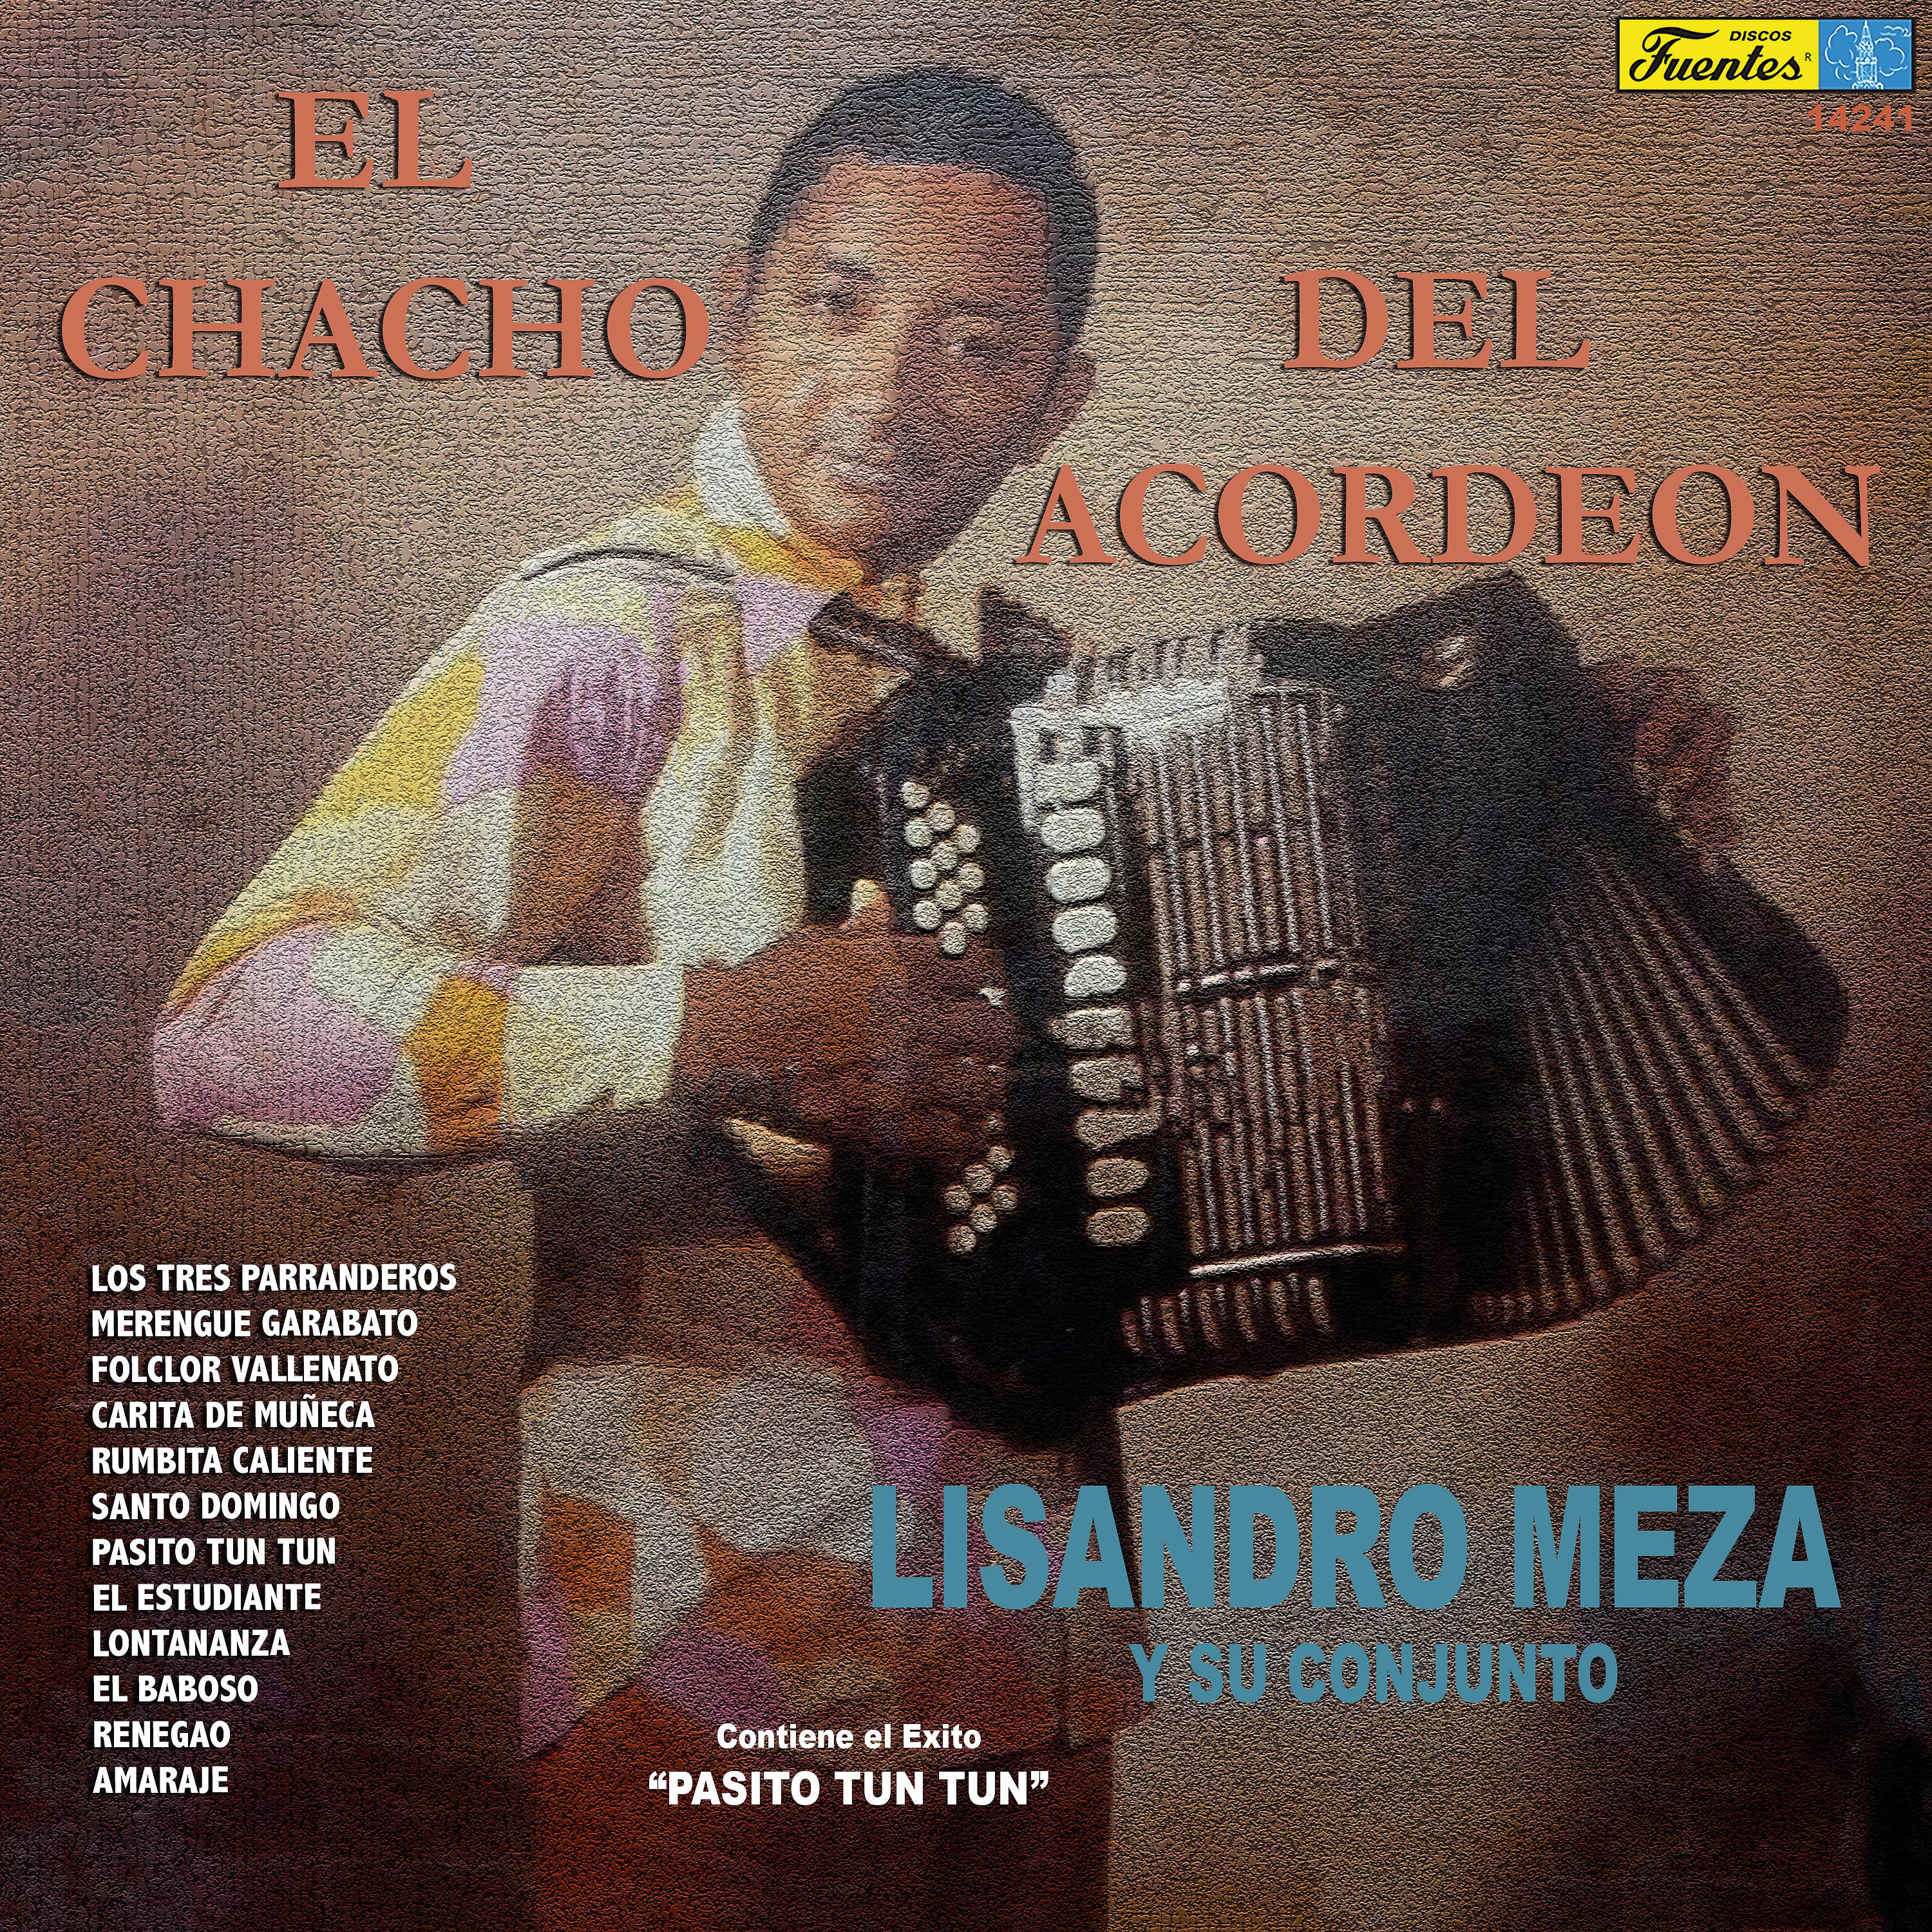 Постер альбома El Chacho del Acordeón